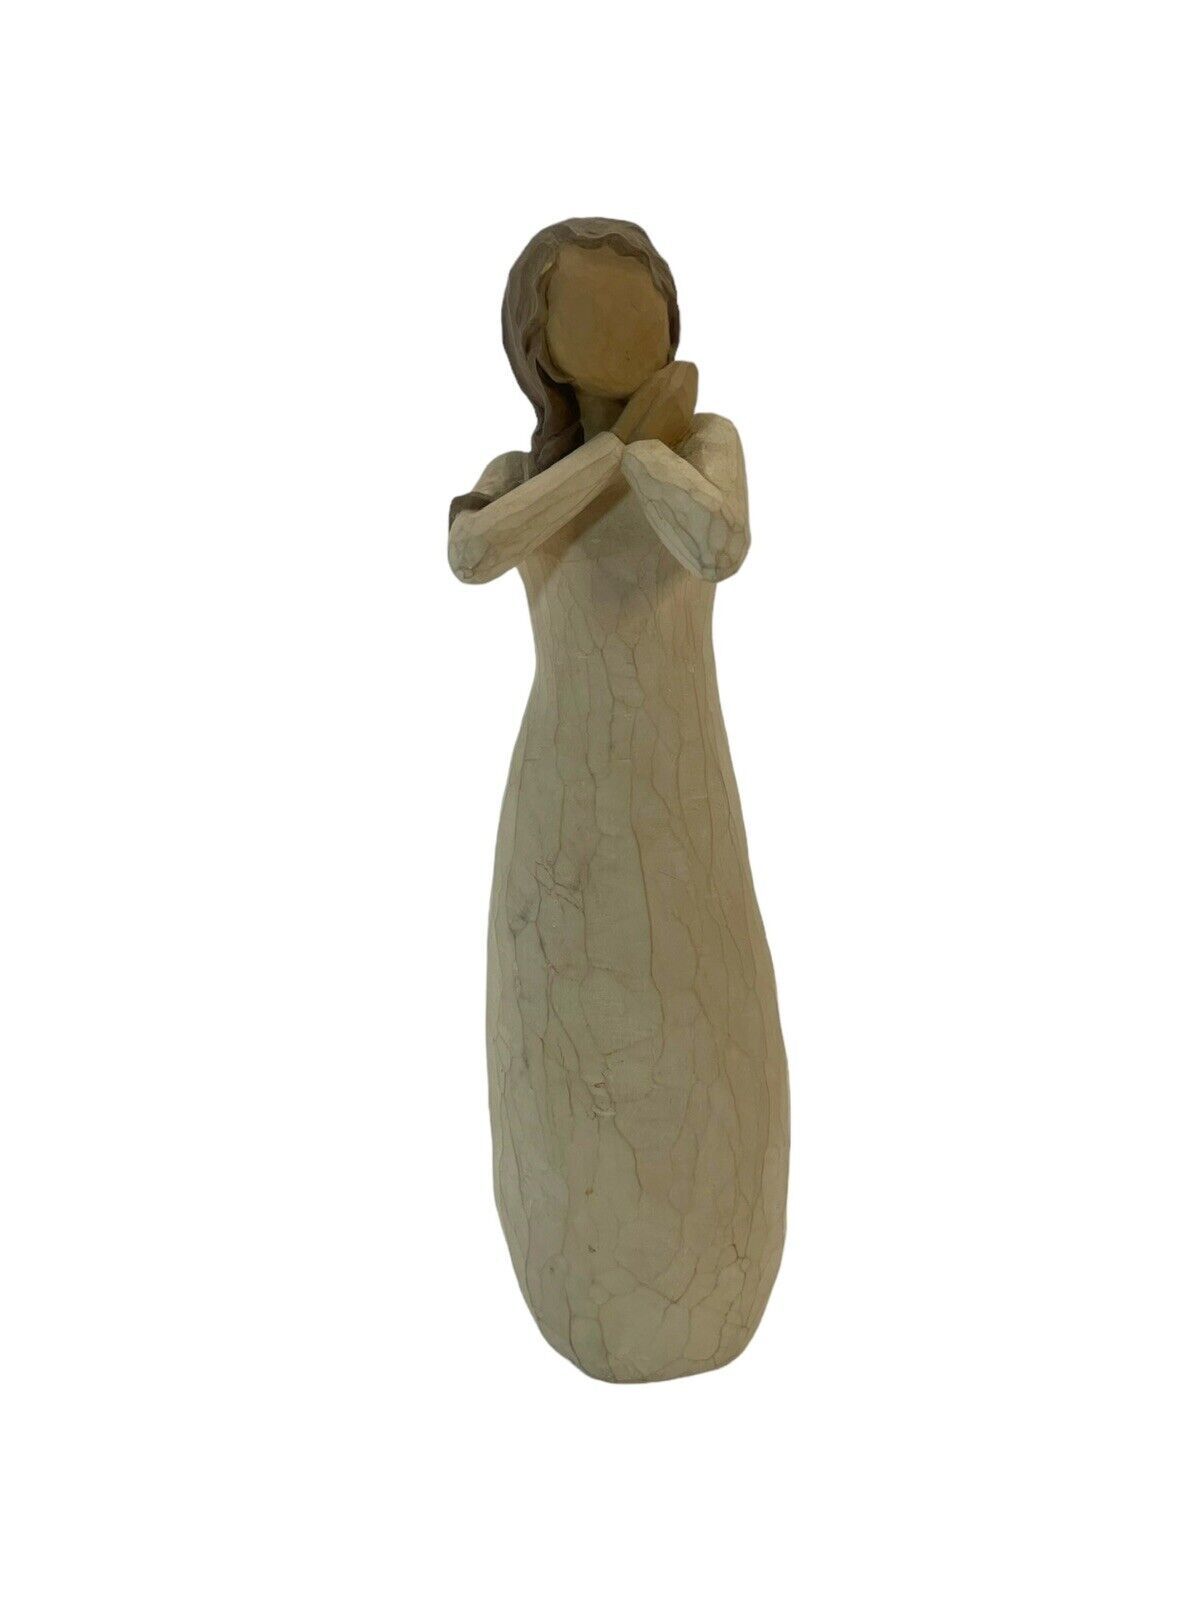 Willow Tree "Joy" Susan Lordi Figurine - Demdaco, 2003 Girl  Figurine - $21.49